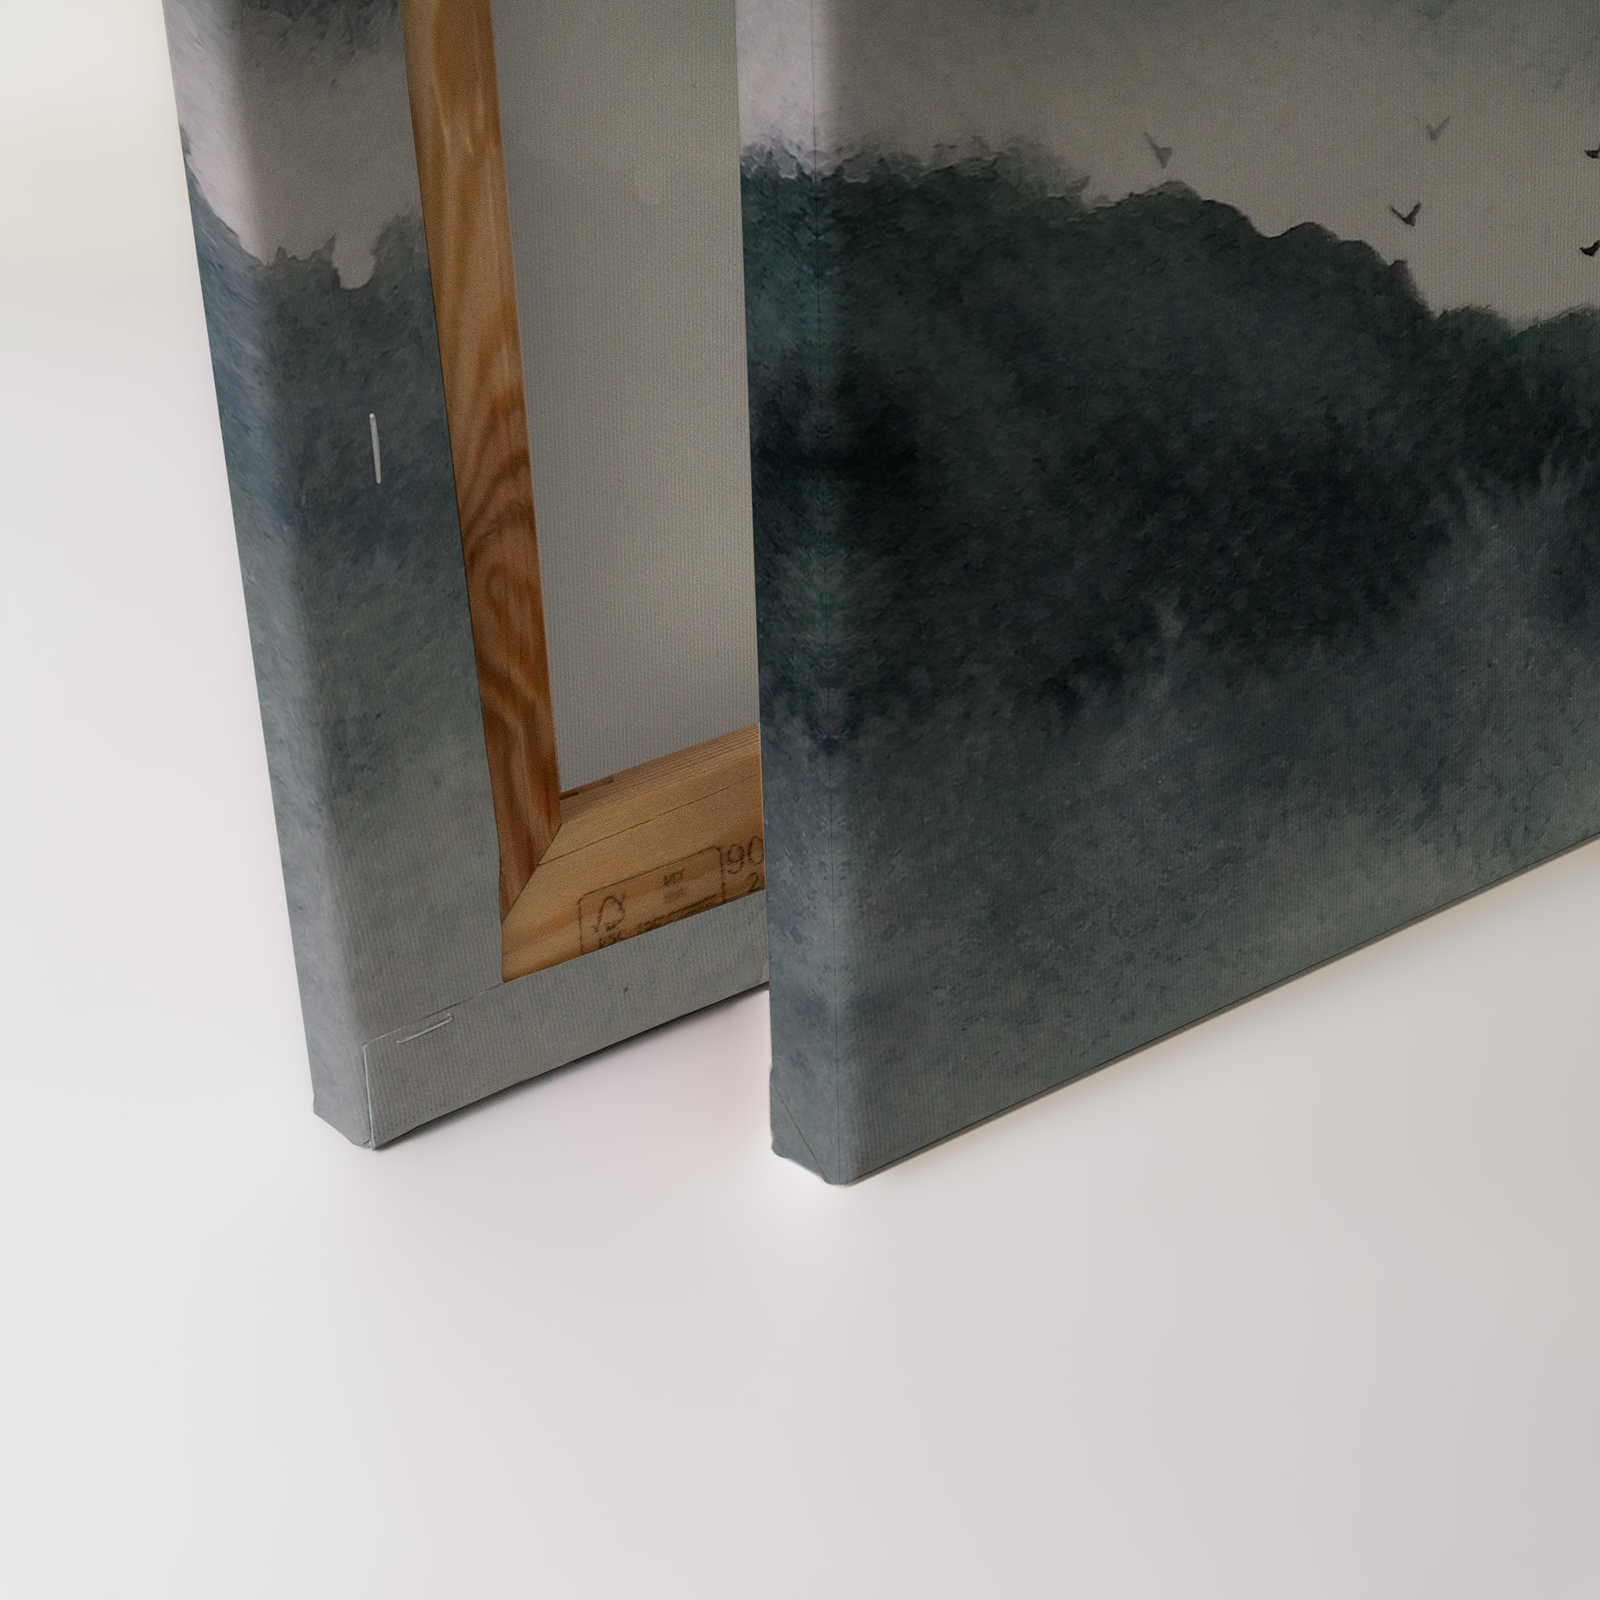             Leinwand mit nebeliger Landschaft im Gemälde-Stil | grau, schwarz – 0,90 m x 0,60 m
        